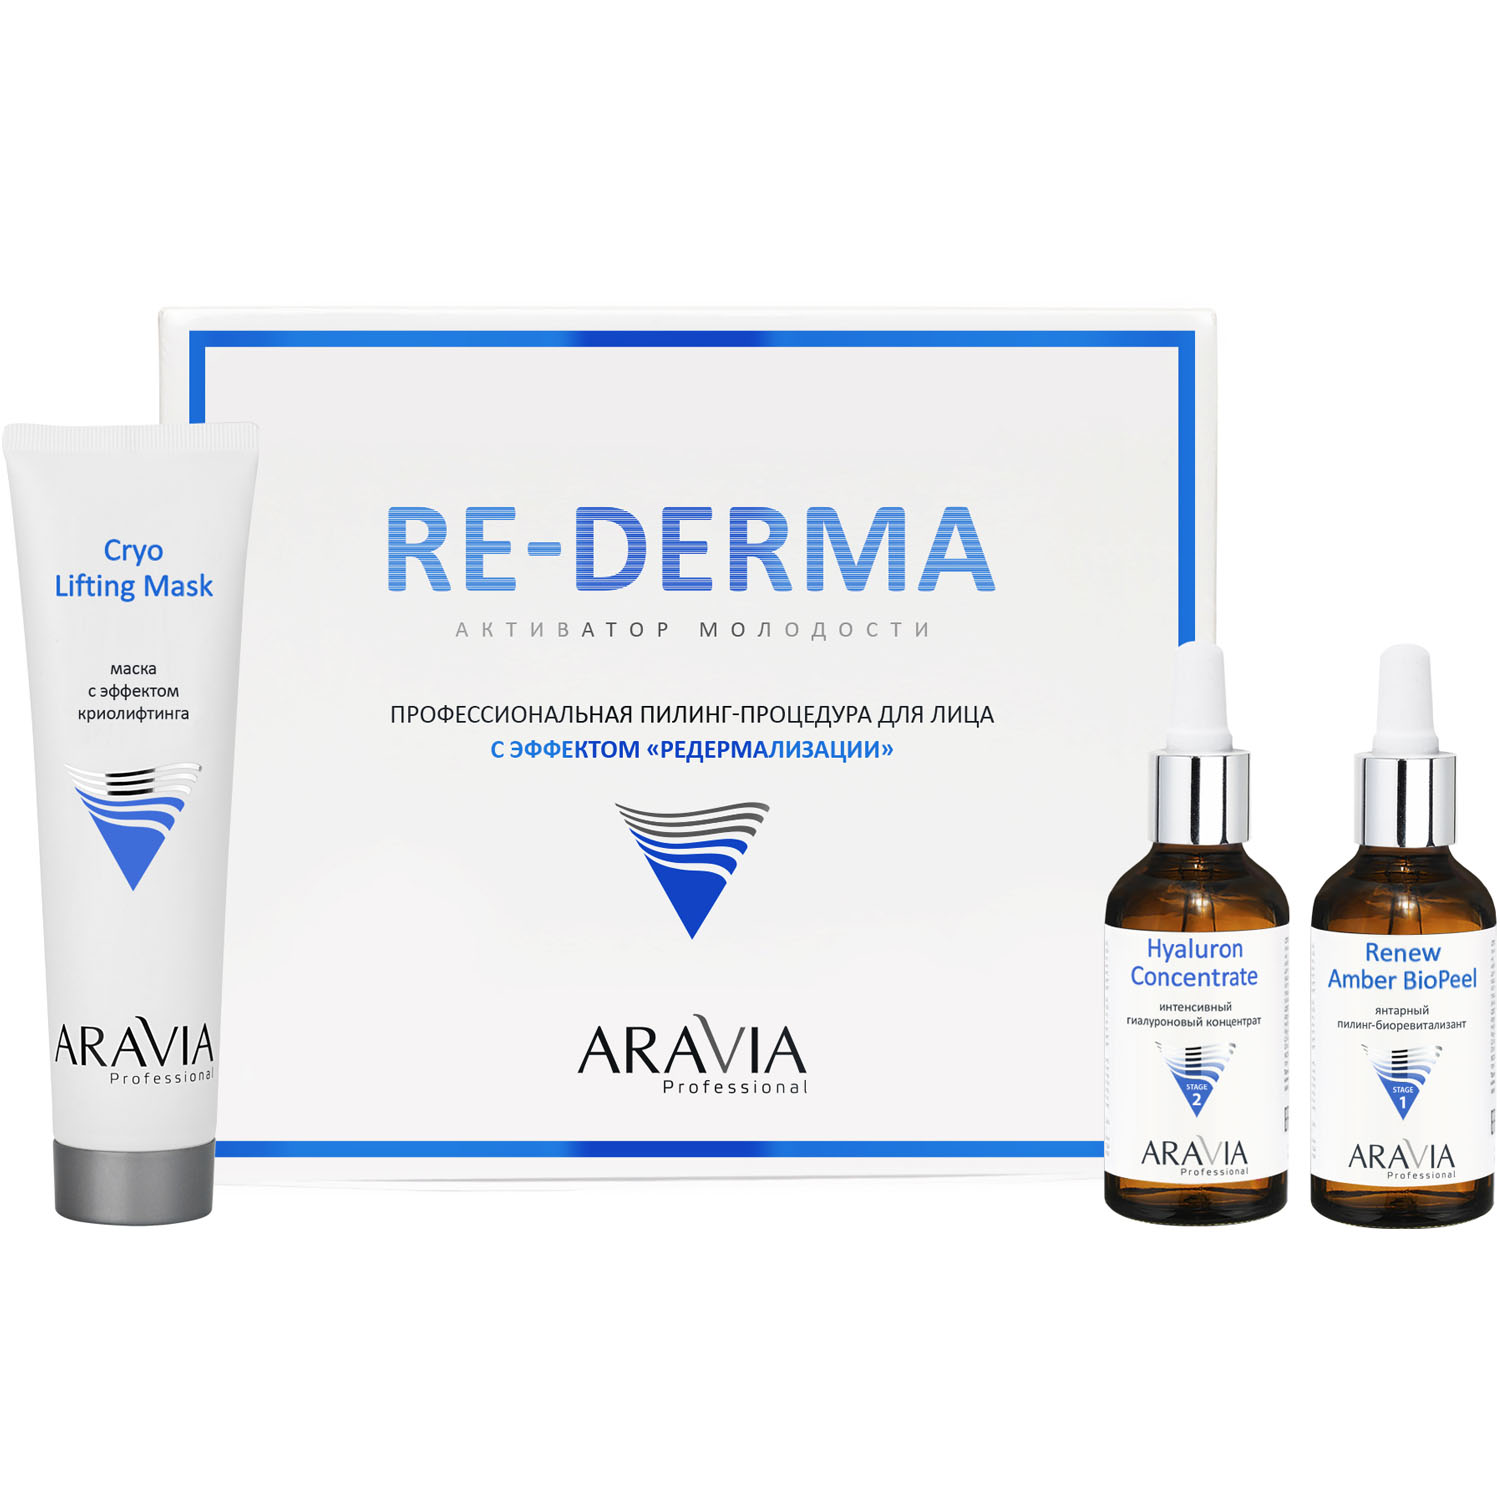 Aravia Professional Профессиональная пилинг-процедура для лица с эффектом «Редермализации» Re-Derma (Aravia Professional, Уход за лицом)